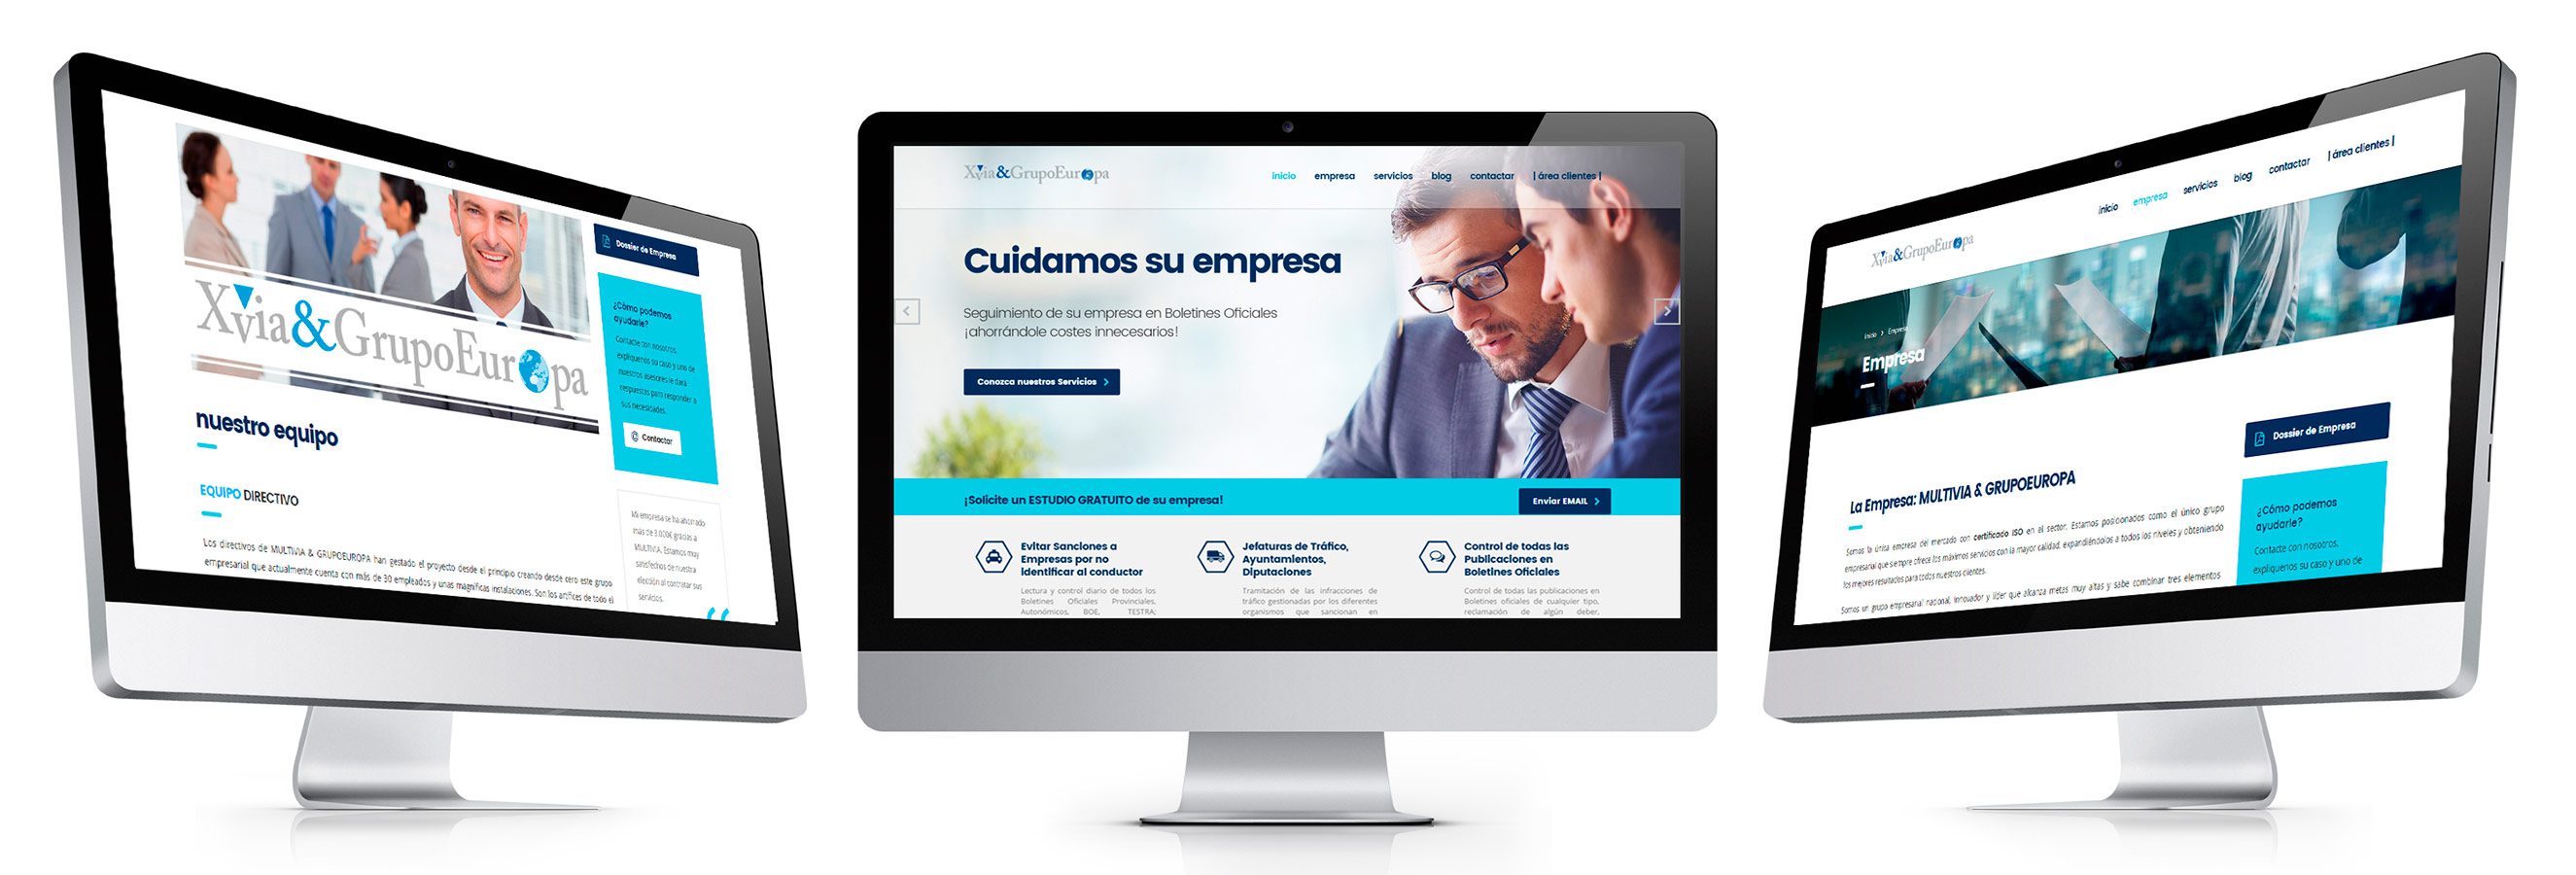 Diseño PÁGINA WEB Corporativa para Servicios Jurídicos XVIA & GRUPOEUROPA (Barcelona) - By IDG GRUP WEB - Imagen Corporativa y Publicidad